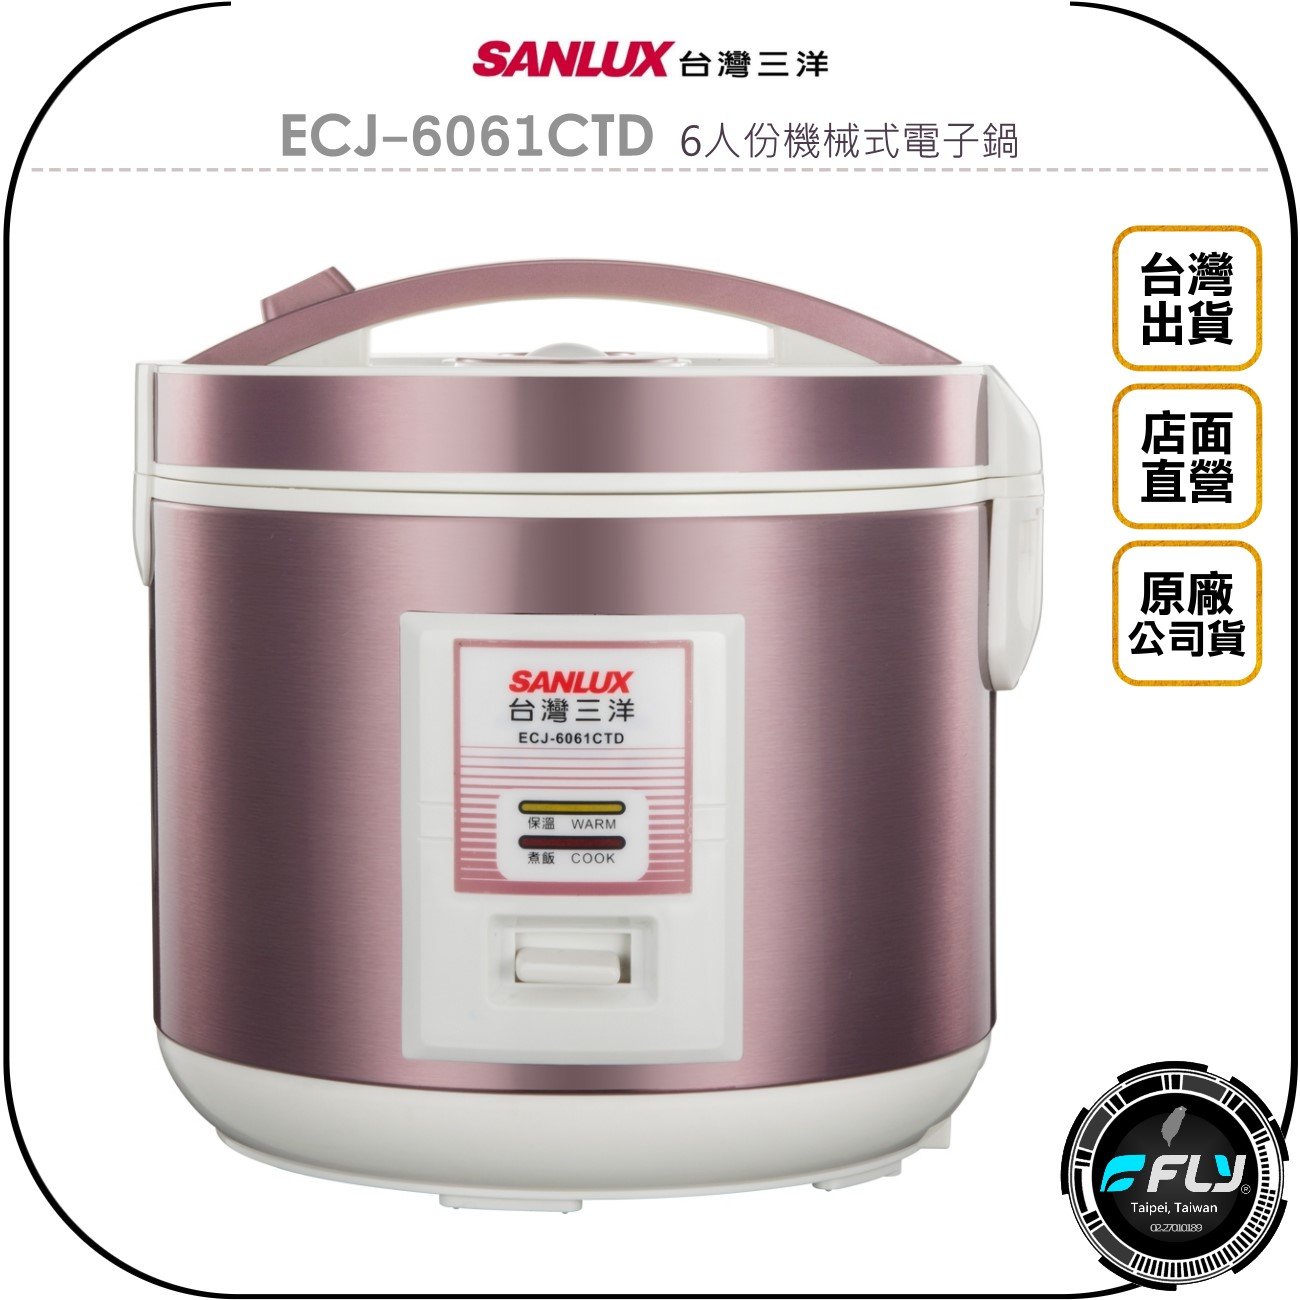 《飛翔無線3C》SANLUX 台灣三洋 ECJ-6061CTD 6人份機械式電子鍋◉公司貨◉3D保溫◉厚釜內鍋